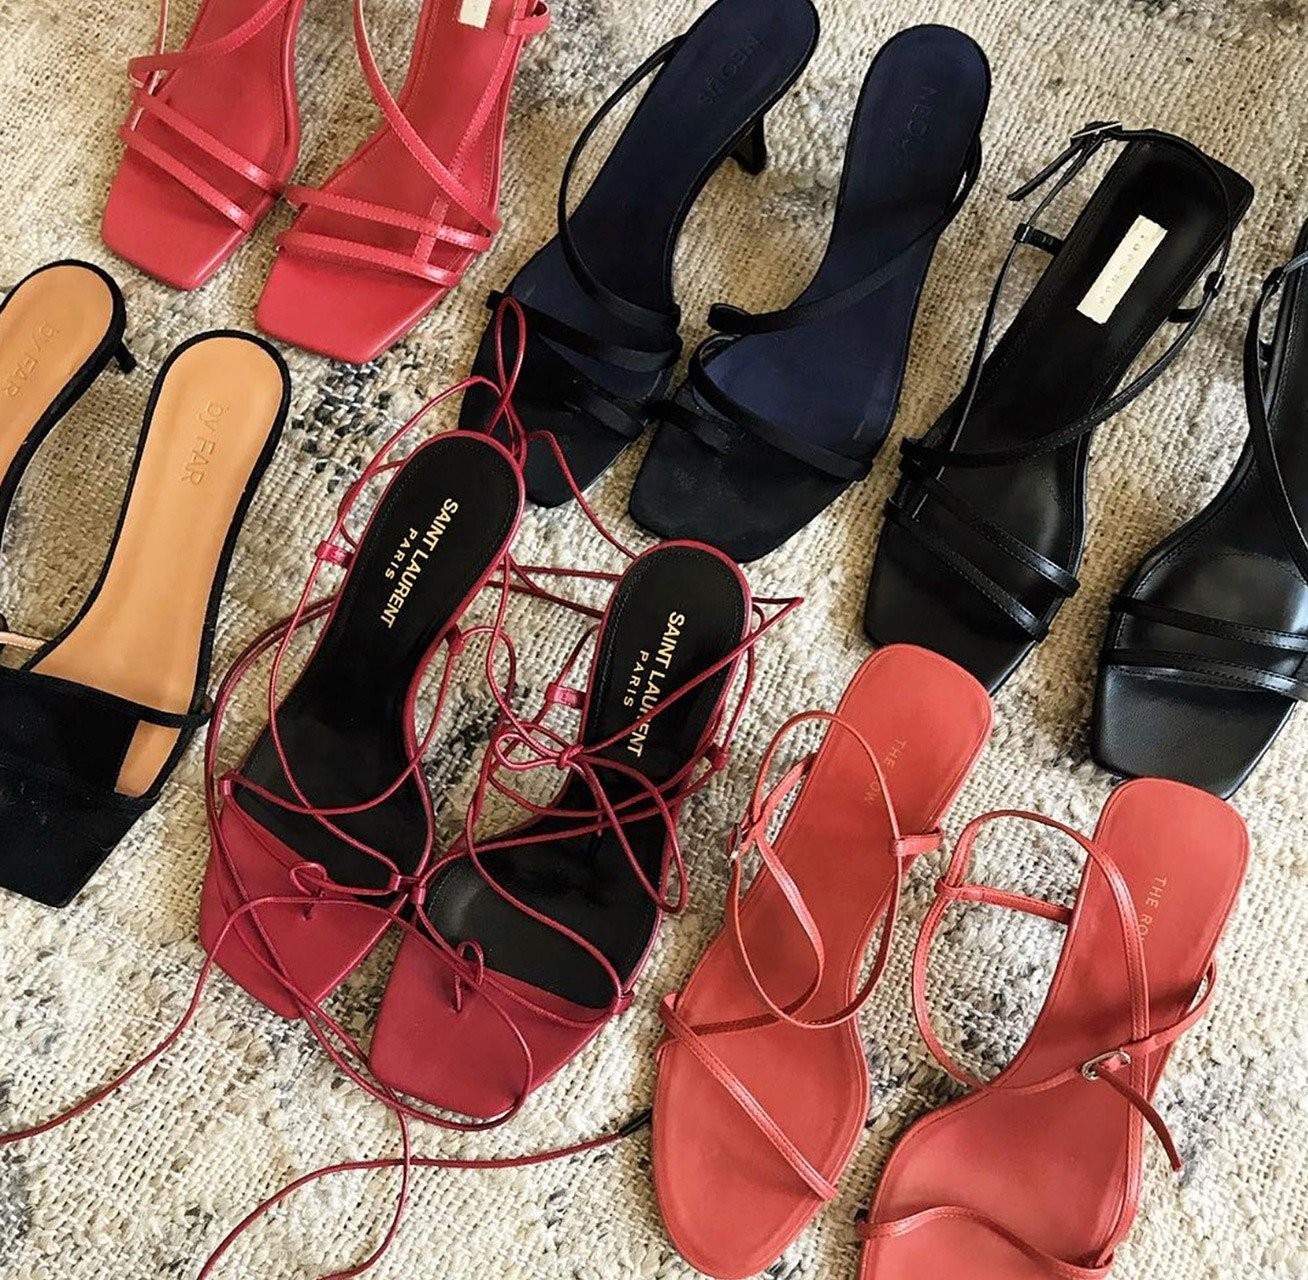 sandals-trends-2019-9.jpg